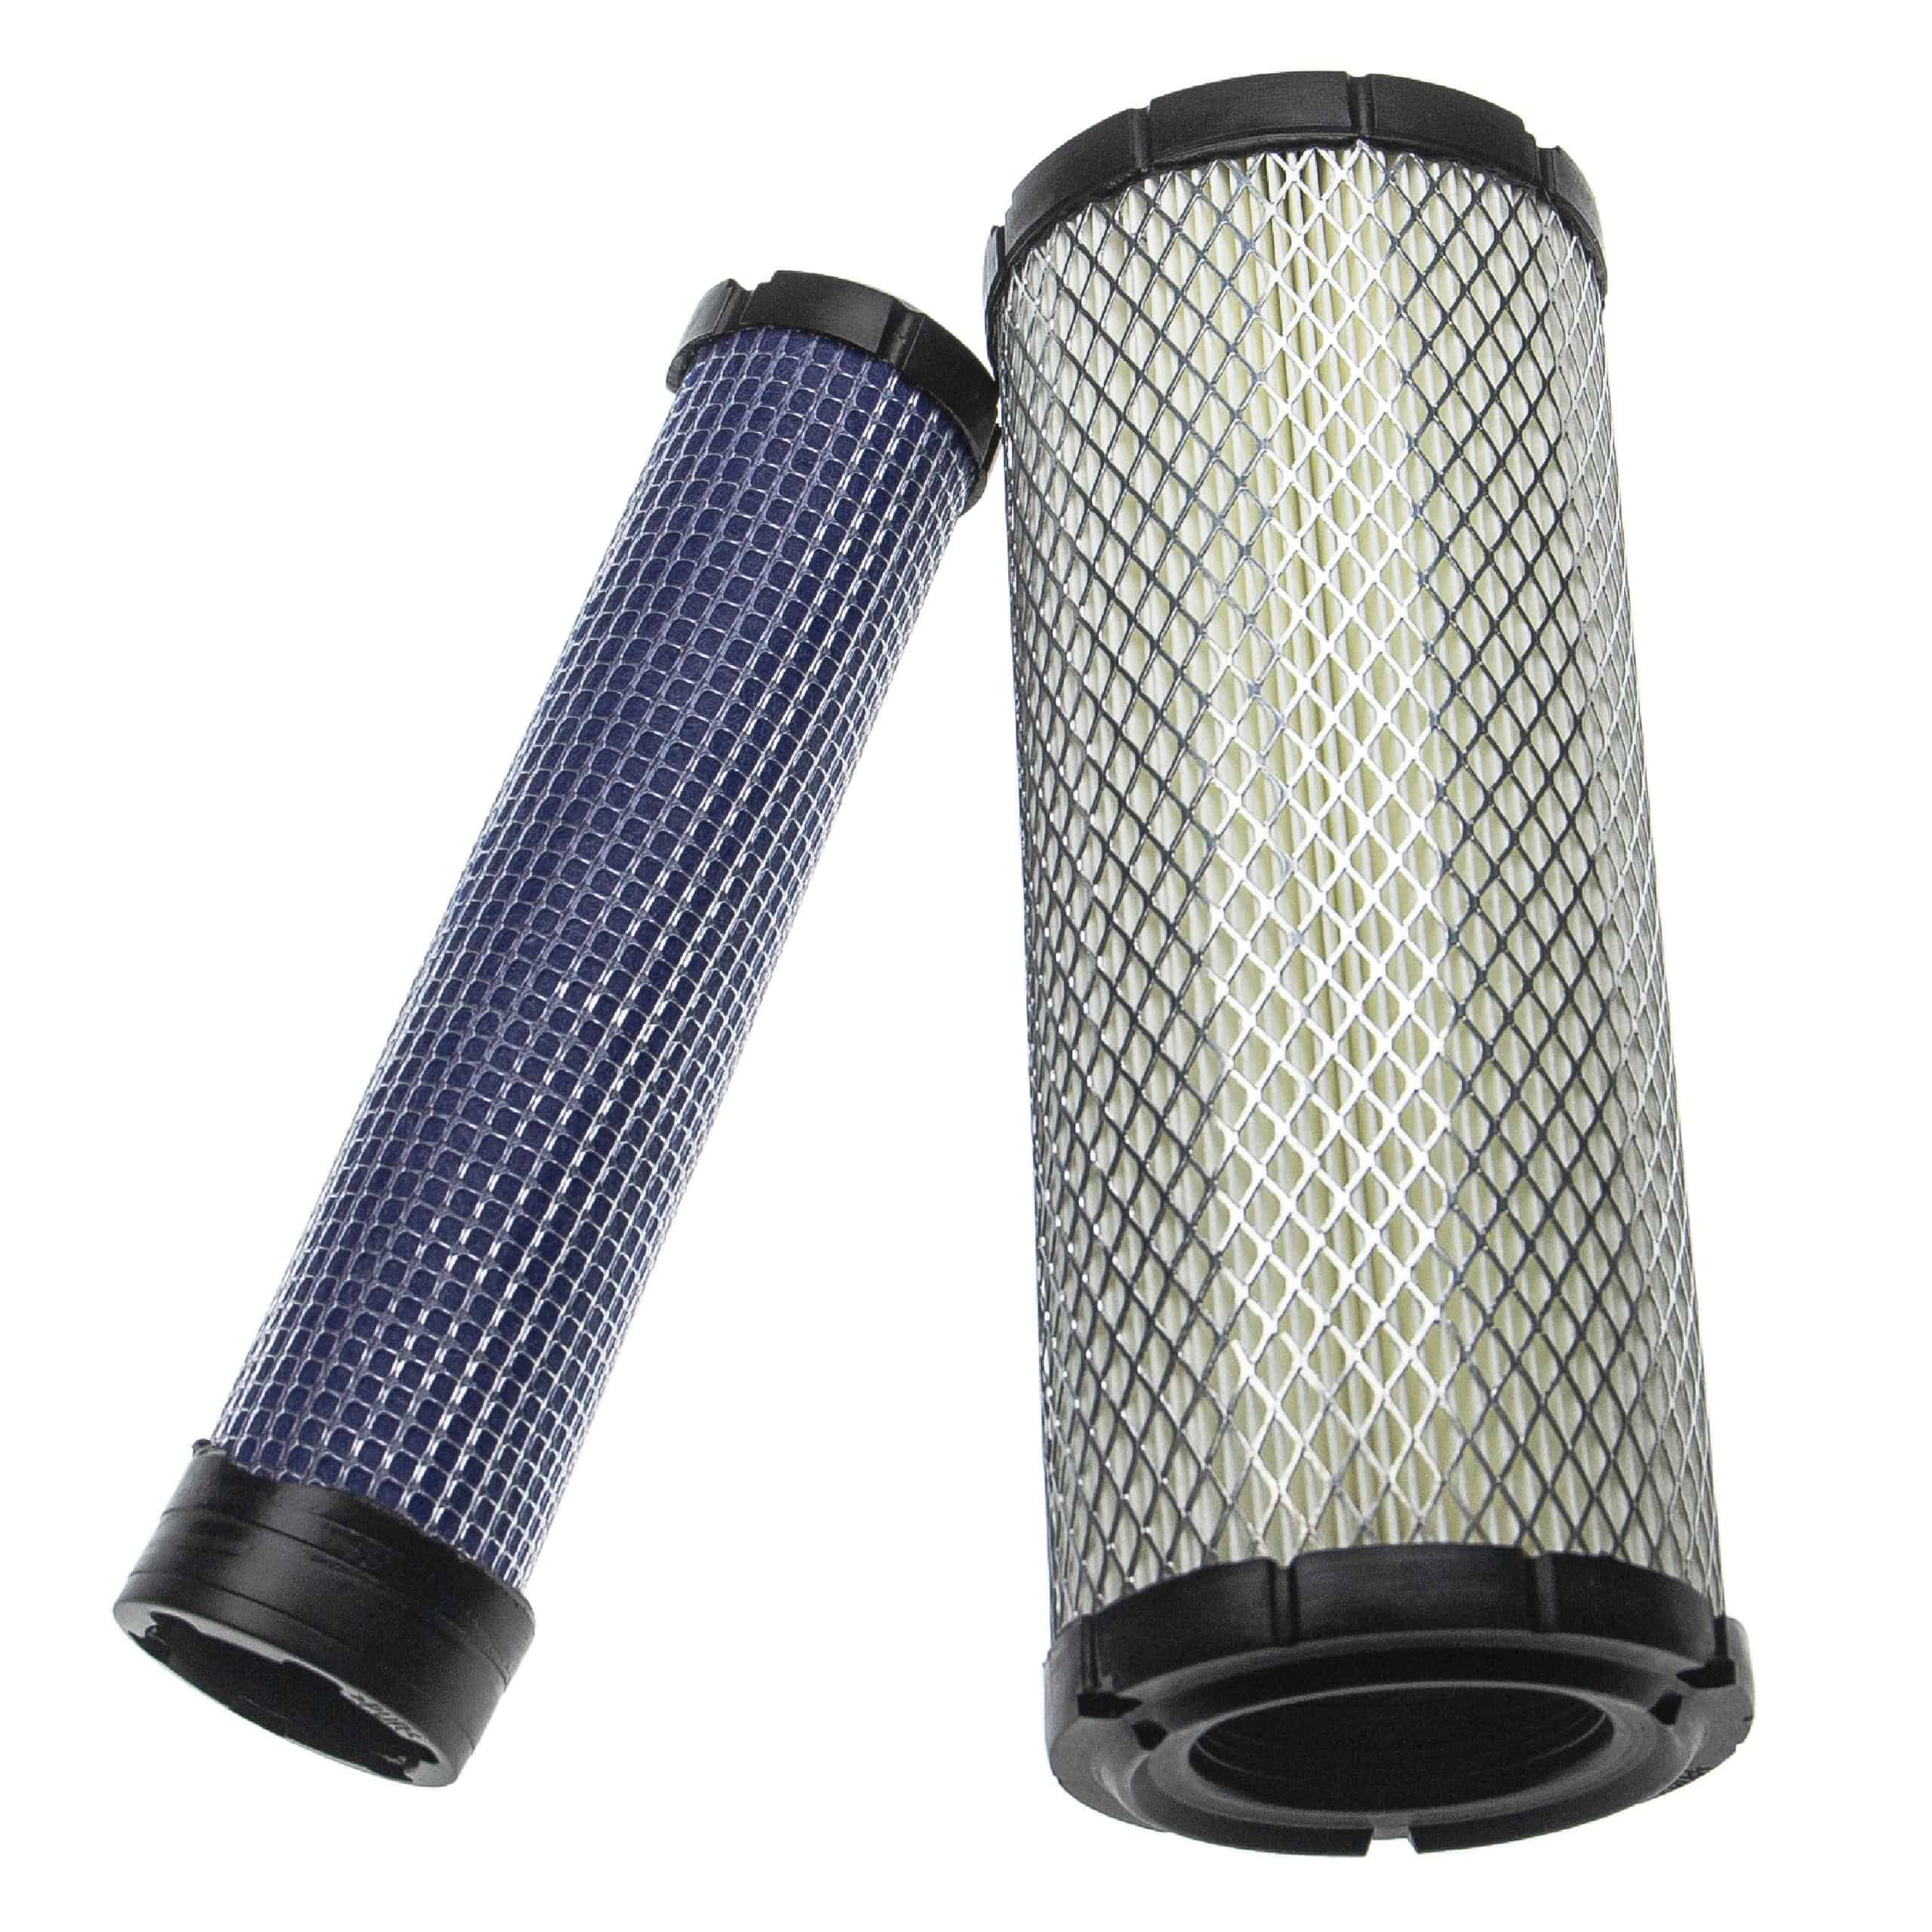 vhbw set filtri - 1x filtro interno, 1x filtro esterno